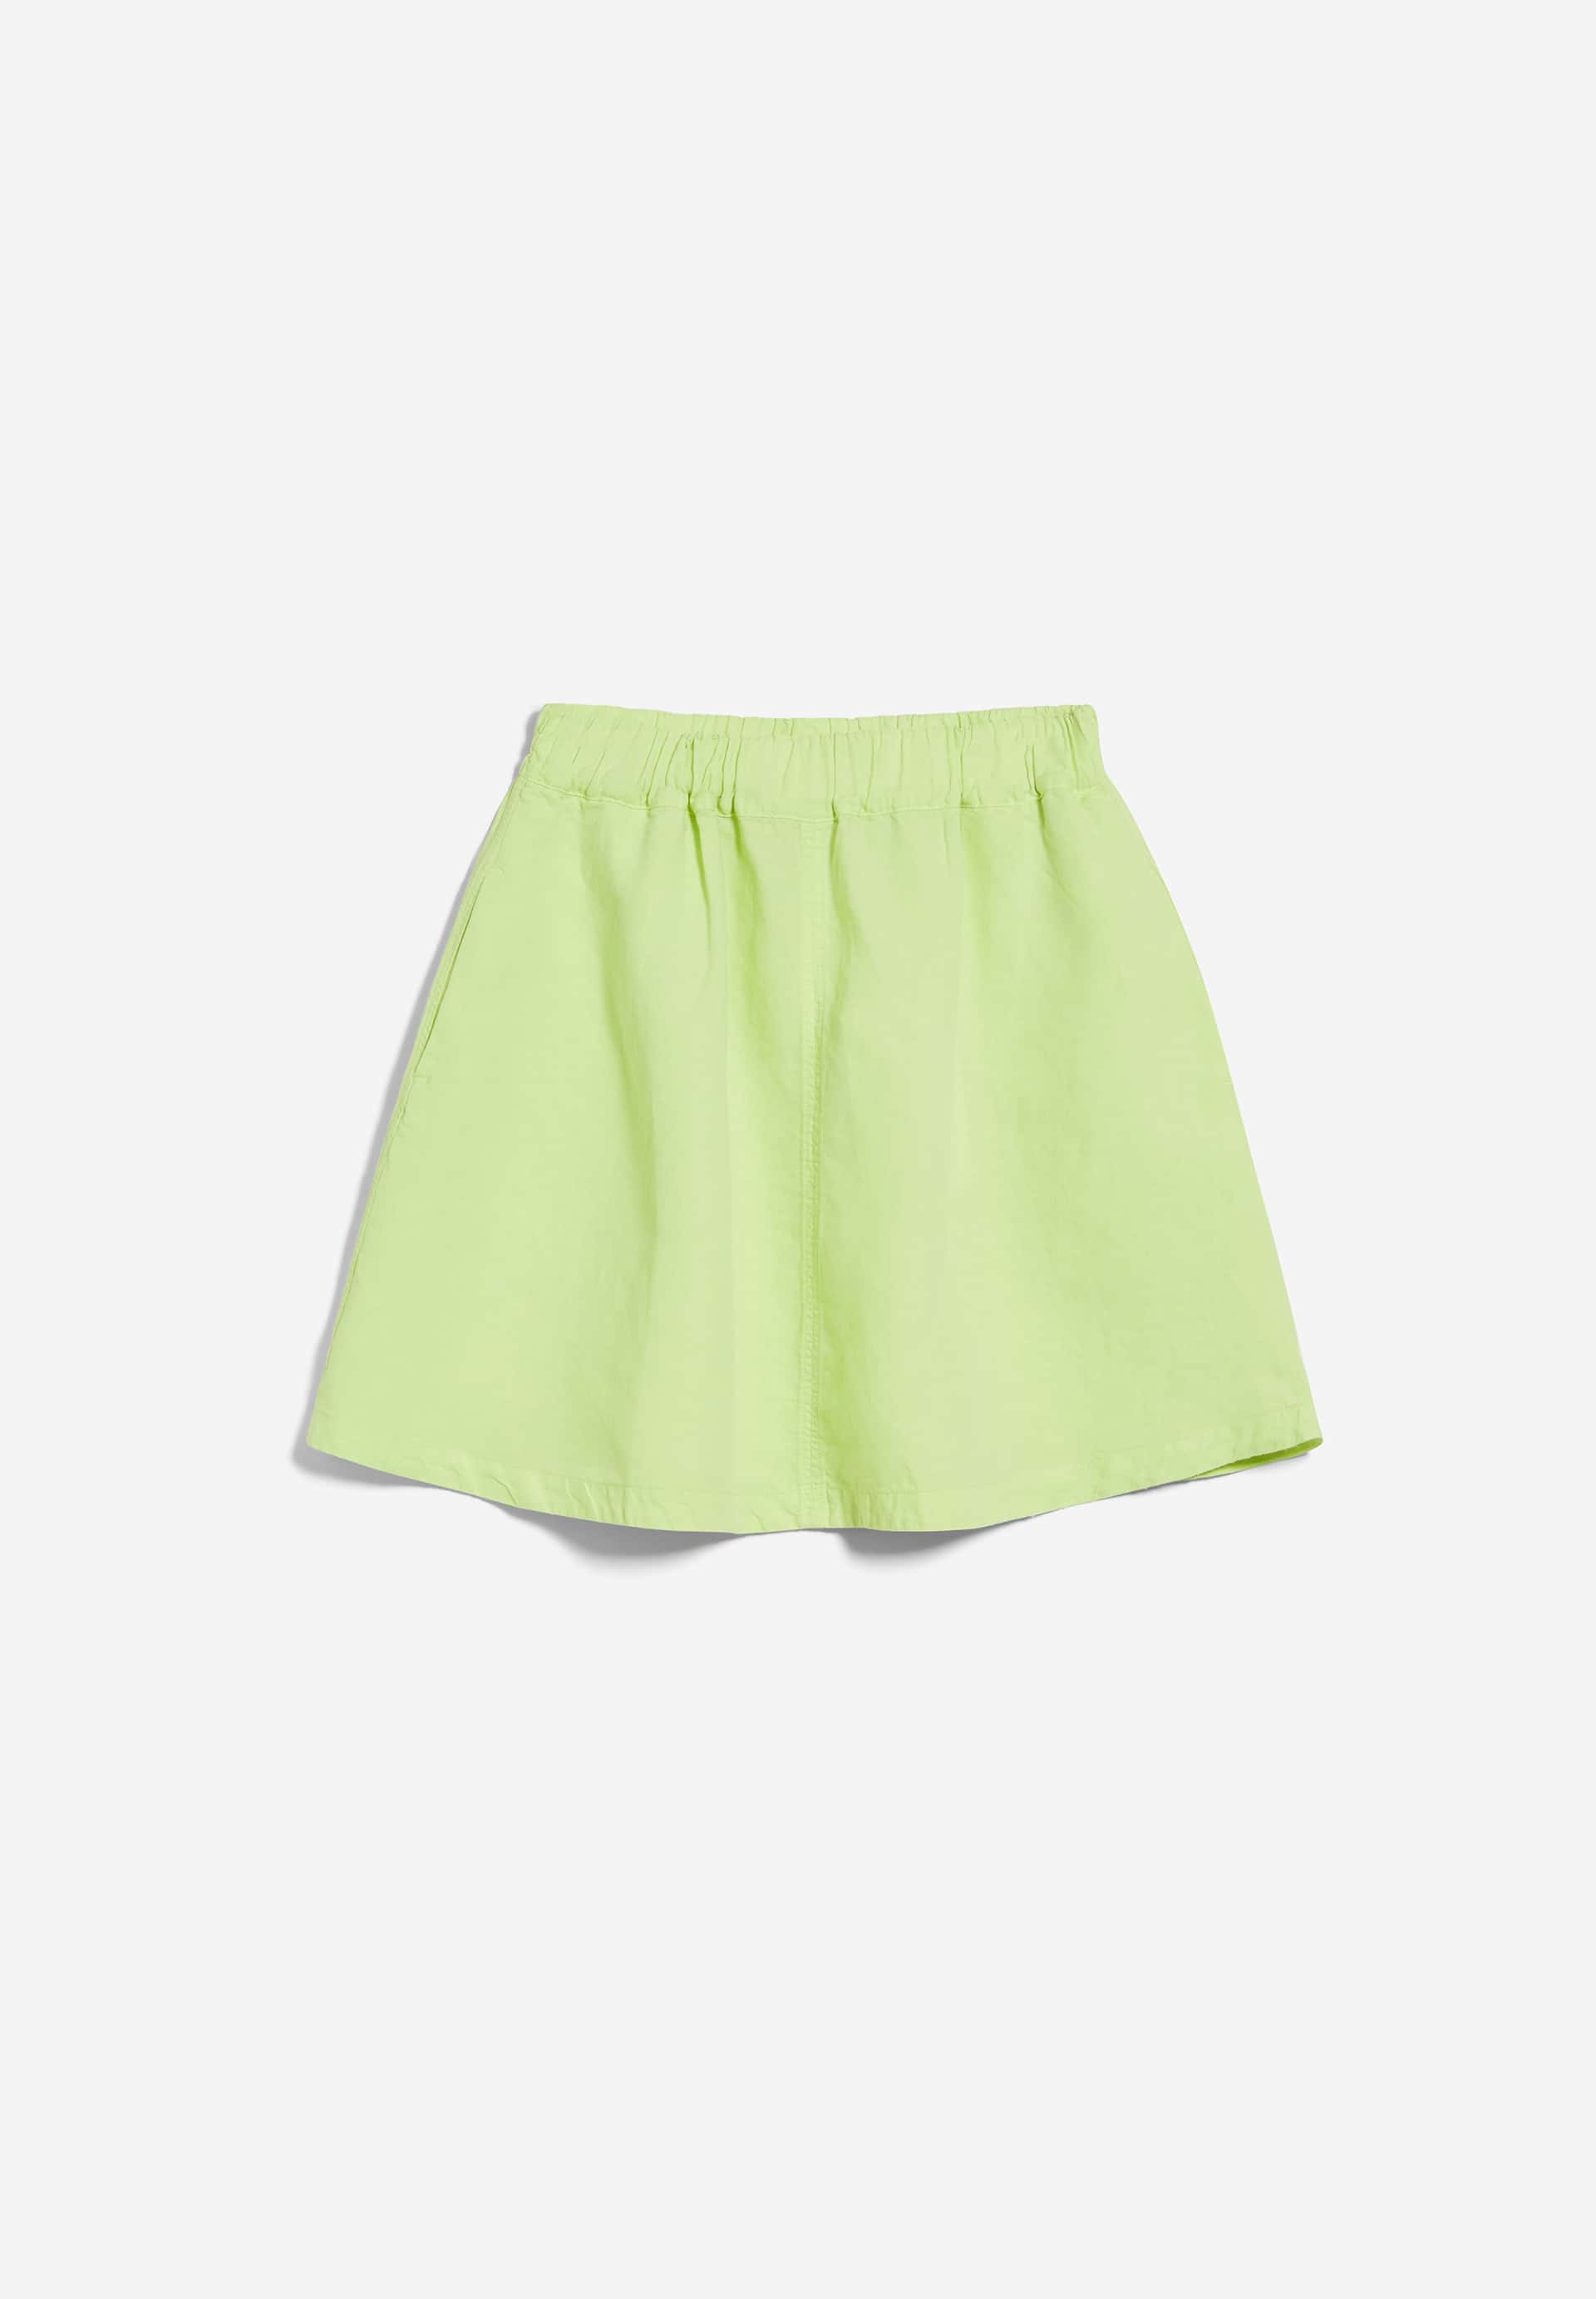 KESIAA LINO Woven Skirt Regular Fit made of Linen-Mix